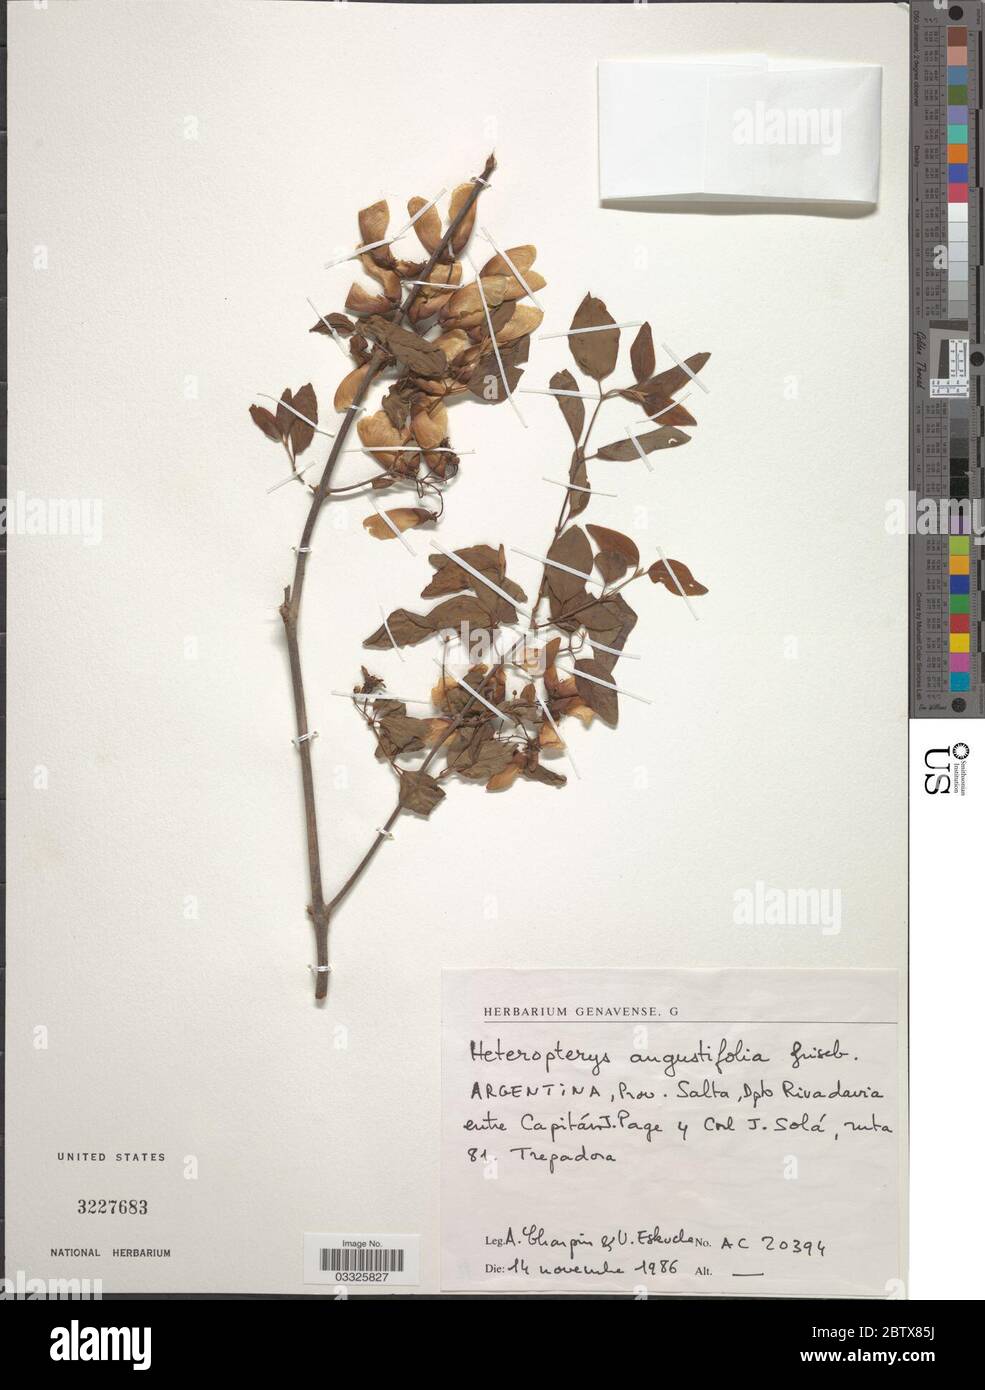 Heteropterys angustifolia Griseb. 12 Jul 20191 Stock Photo